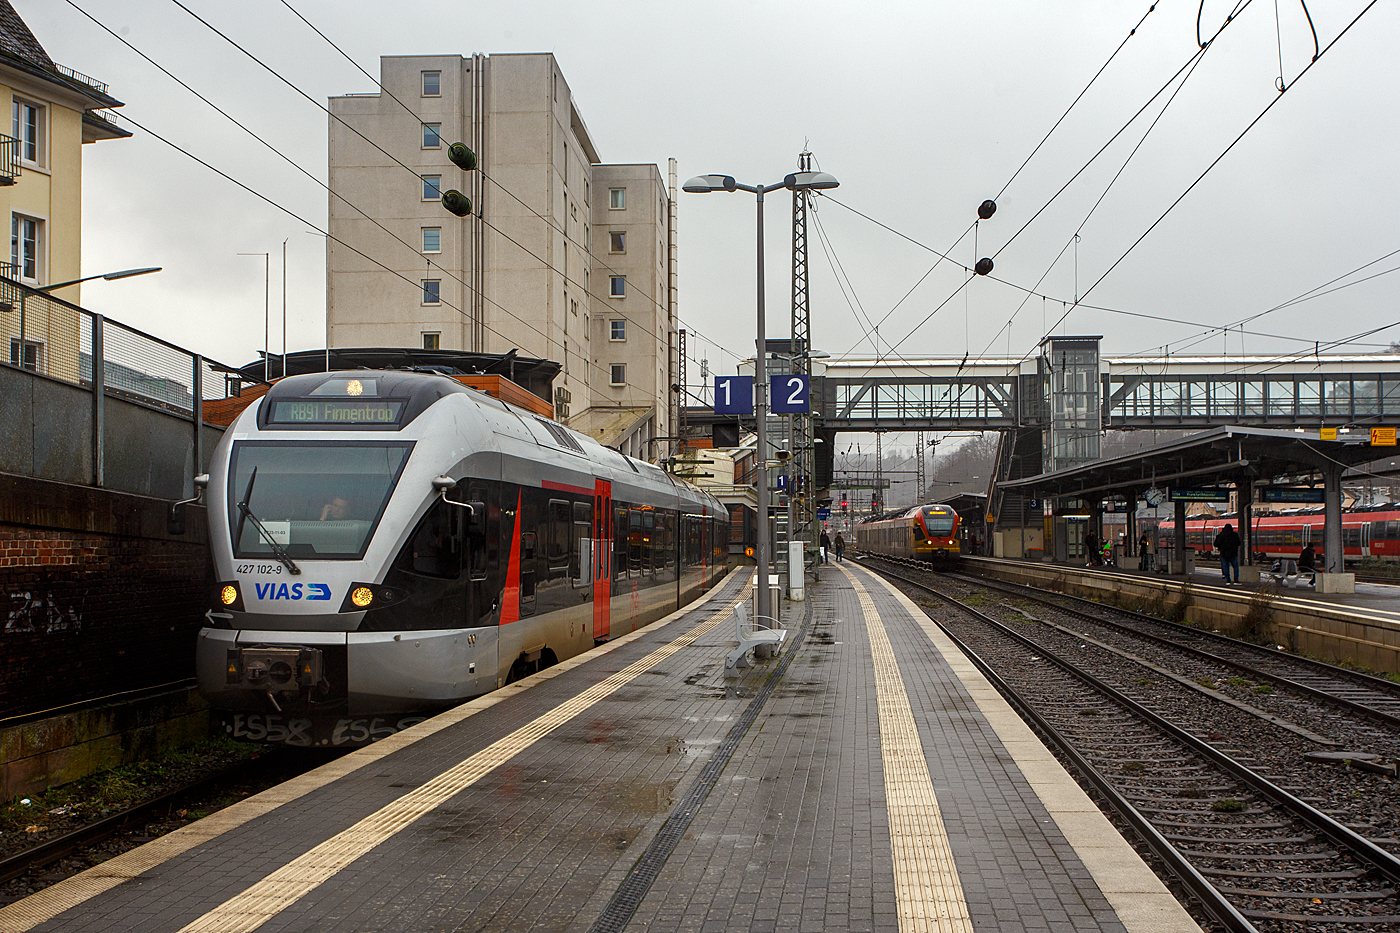 Nun mit VIAS-Logo.... 
Der (nun) VIAS Stadler FLIRT ET 23-11-03 (94 80 0427 102-9 D-VIASR / 94 80 0827 102-5 D-VIASR / 94 80 0427 602-8 D-VIASR), ex DB, ex Abellio Rail NRW ET 23 2103  Werdohl ,  ex ET 23 003, steht am 29 Dezember 2023, als RB 91  Ruhr-Sieg-Bahn  nach Finnentrop, auf Gleis 1 im Hauptbahnhof Siegen zur Abfahrt bereit.

Vom 9. Dezember 2007 bis zu seiner Insolvenz im Juli 2021 führte Abellio Rail NRW den Schienenpersonennahverkehr auf dem Ruhr-Sieg-Netz (RE 16 und RB 91) aus. Nach der Insolvenz übernahm zunächst per Direktvergabe wieder DB Regio mit dem Verkehr auf der Strecke bis Dezember 2023, seit dem Fahrplanwechsel im Dezember 2023 hat nun nach regulärer Vergabe schließlich die VIAS Rail GmbH den Schienenpersonennahverkehr (RE 16 / RB 91) bis Dezember 2034 übernommen.  VIAS Rail ist ein 100 %iges Tochterunternehmen der R.A.T.H.-Gruppe.

In Zusammenhang mit dem Neubau der Rahmedetalbrücke auf der A45 wurde die Nahverkehrsfreigabe der IC-Linie 34 zum 1. September 2022 auf den Abschnitt Dortmund–Iserlohn-Letmathe ausgeweitet, und seit dem 11. Dezember 2022 verkehrt in den Stunden ohne Intercity zwischen Siegen und Iserlohn-Letmathe anstelle der Linie RE 16 die neue Linie RE 34 (Dortmund-Siegerland-Express) betrieben durch die DB Regio, welche ebenfalls an Hagen vorbei nach Dortmund Hbf durchgebunden wird. So kann die Reisezeit zwischen Siegerland, Sauerland und Dortmund deutlich verkürzt werden. Eingesetzt werden neue Elektrotriebwagen des Typs Stadler Flirt 3 XL, aus aktuellen eigenen Beständen der S-Bahn Rhein-Ruhr.

Der FLIRT wurde 2007 von der Stadler Pankow GmbH in Berlin unter der Fabriknummer 34663 gebaut. Er wurde von Macquarie Rail (vormals CBRail) an die Abellio Rail NRW GmbH verleast bzw. vermietet. Im Jahr 2020 verkaufte Macquarie das Leasinggeschäft für Schienenfahrzeuge an die französischen Konkurrenten Akiem.